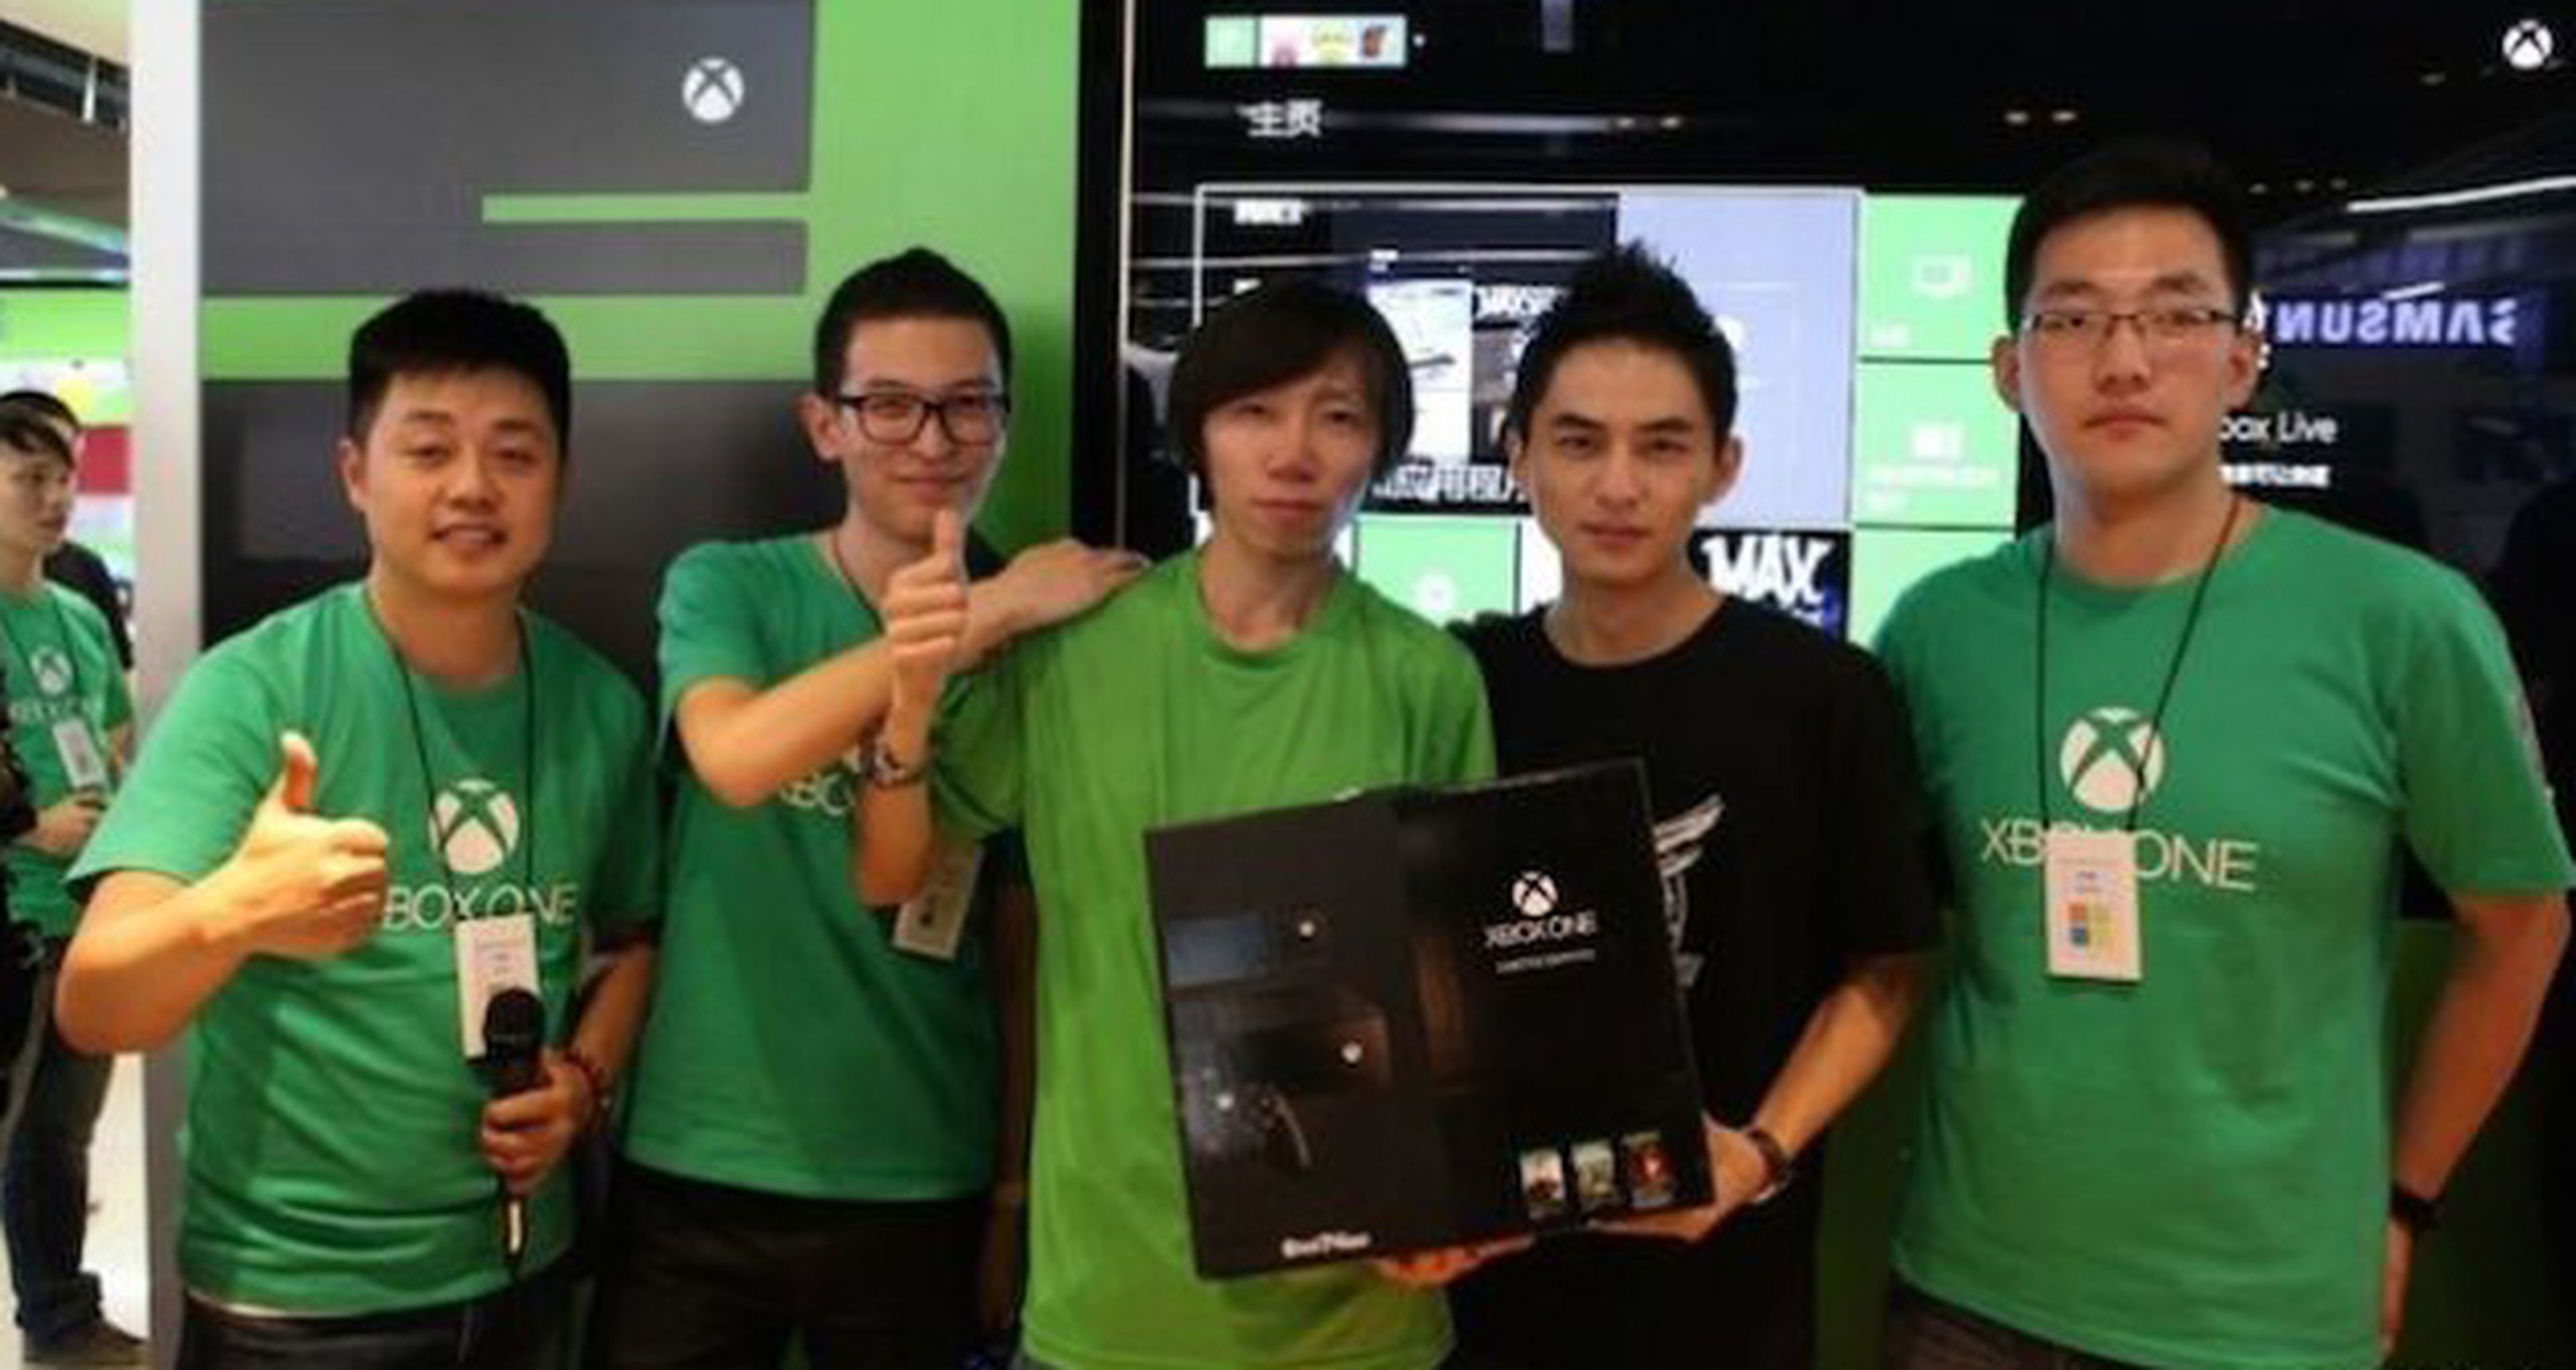 Xbox One triunfa en su lanzamiento en China